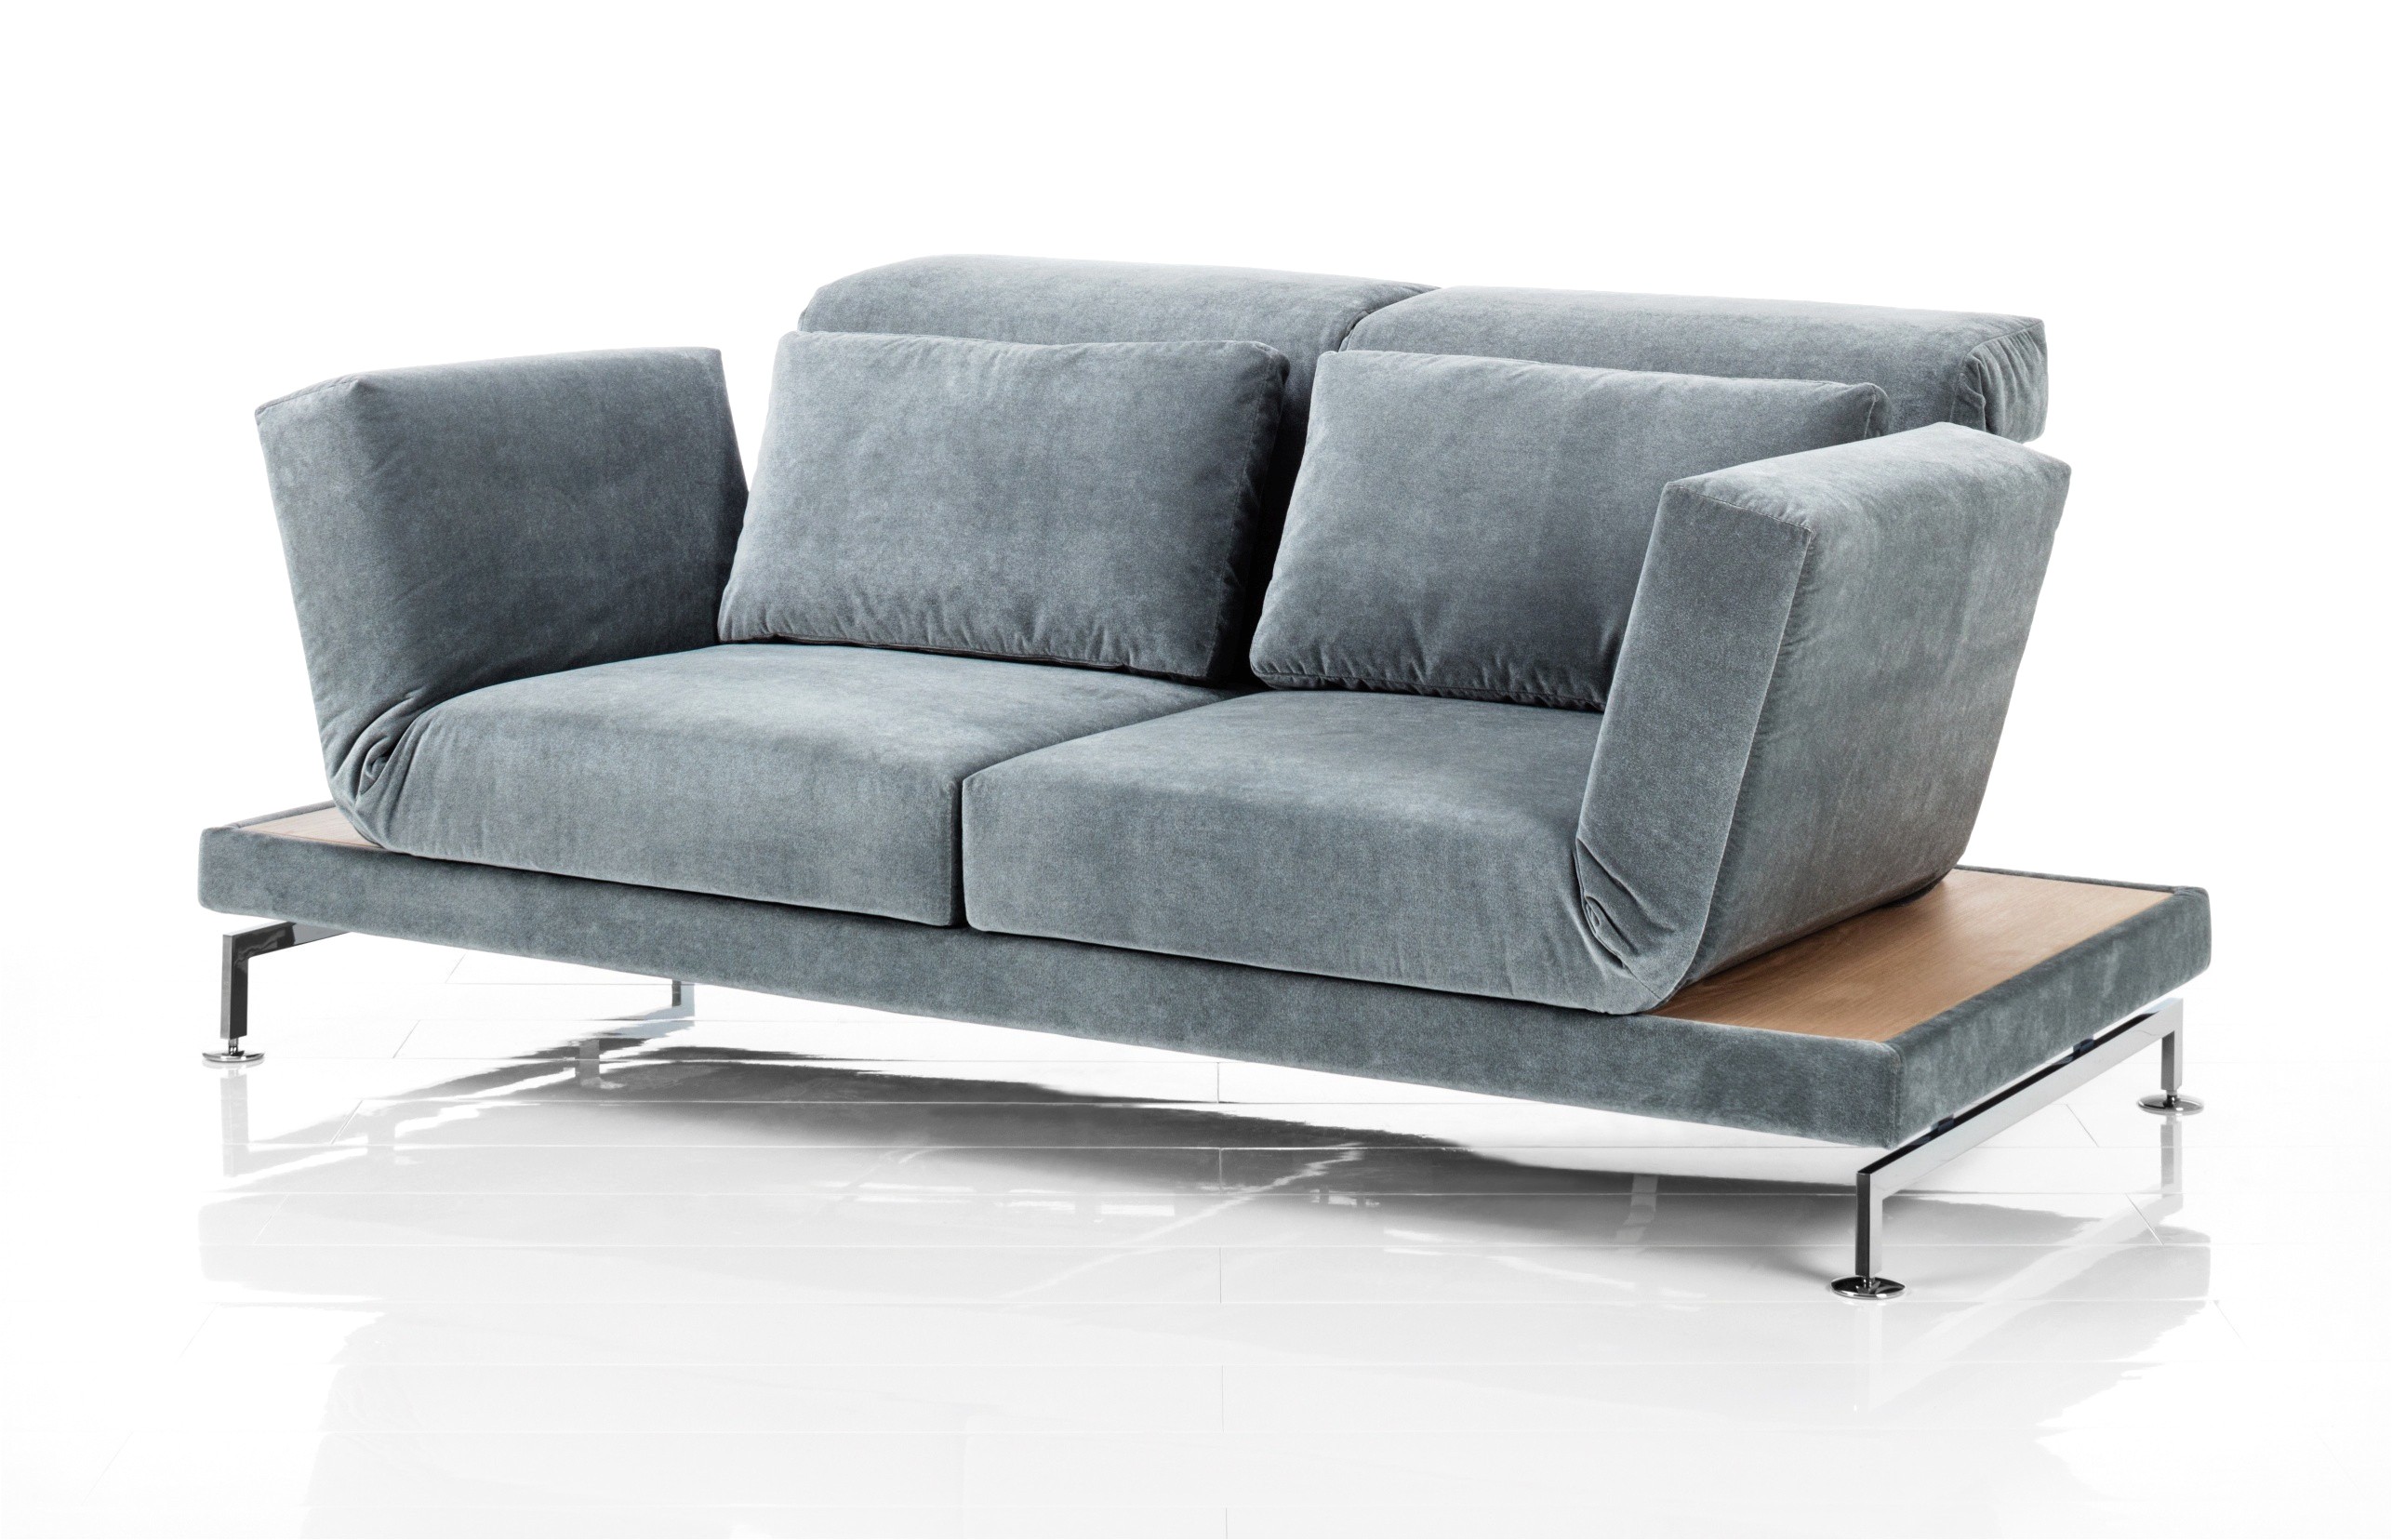 76 inch sofa lovely futon tragegurte 0d stichworte ansprechend futon tragegurte